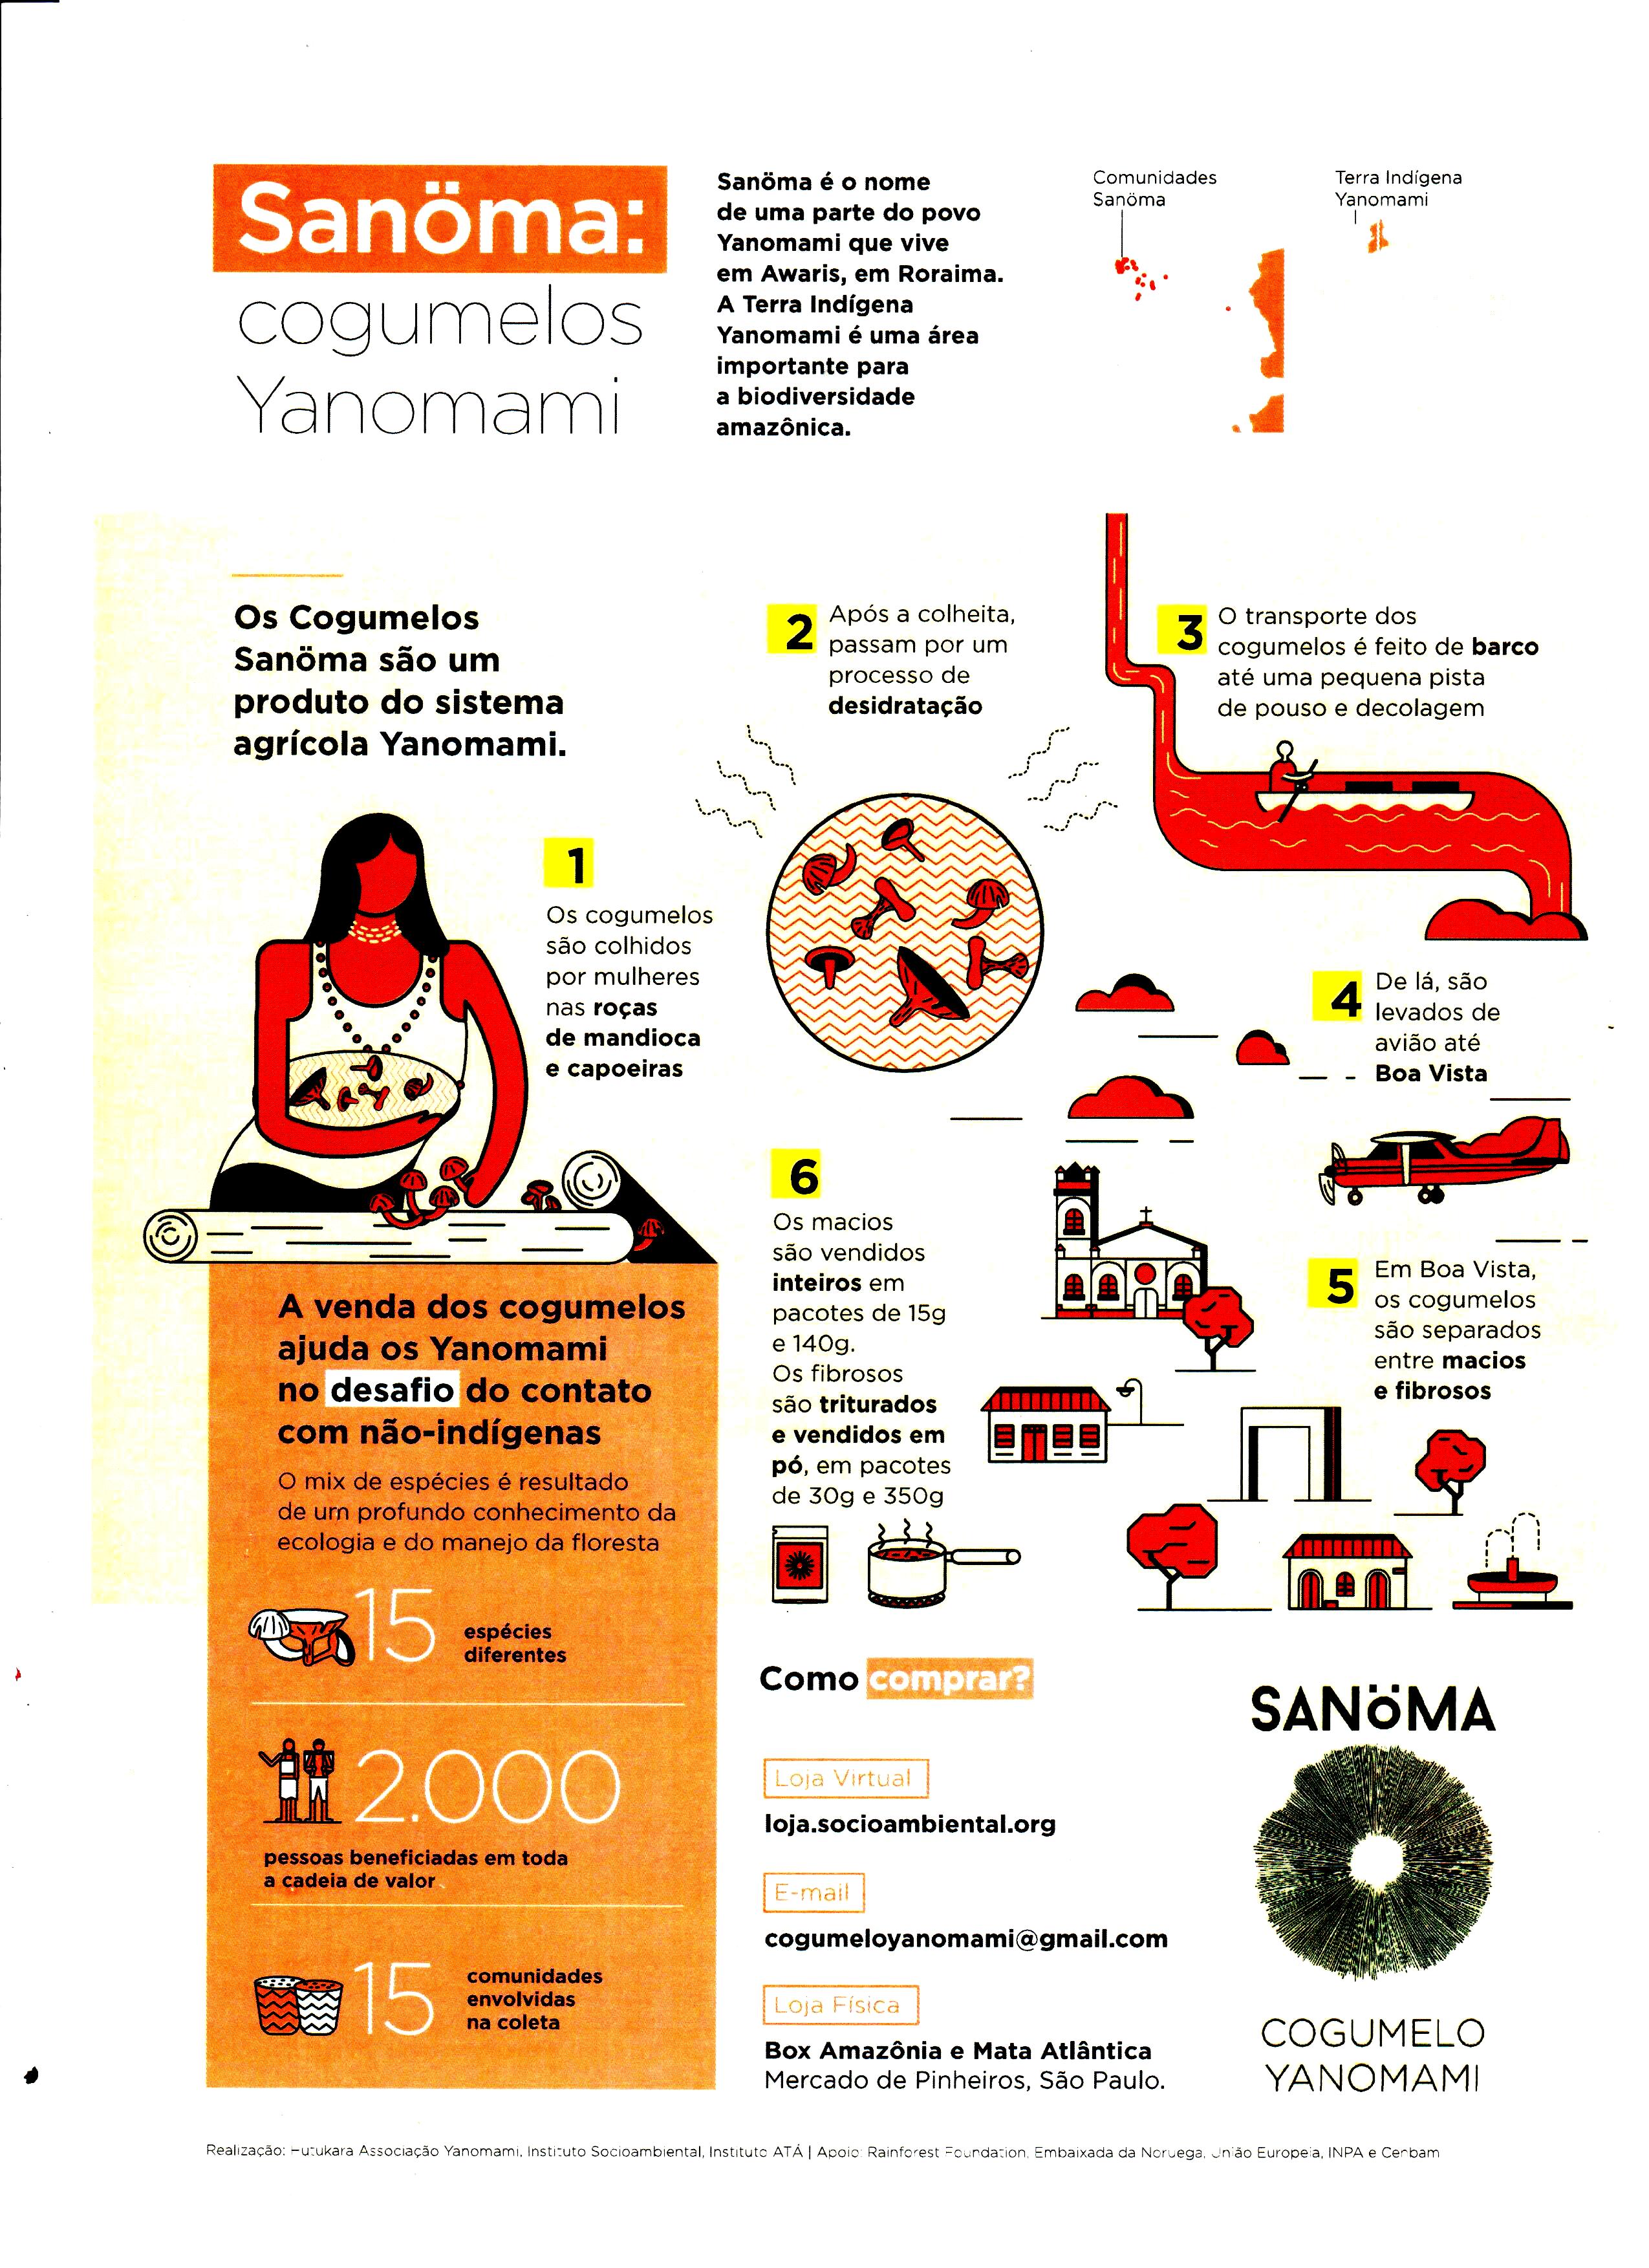 Sanoma: Yanomami mushrooms.